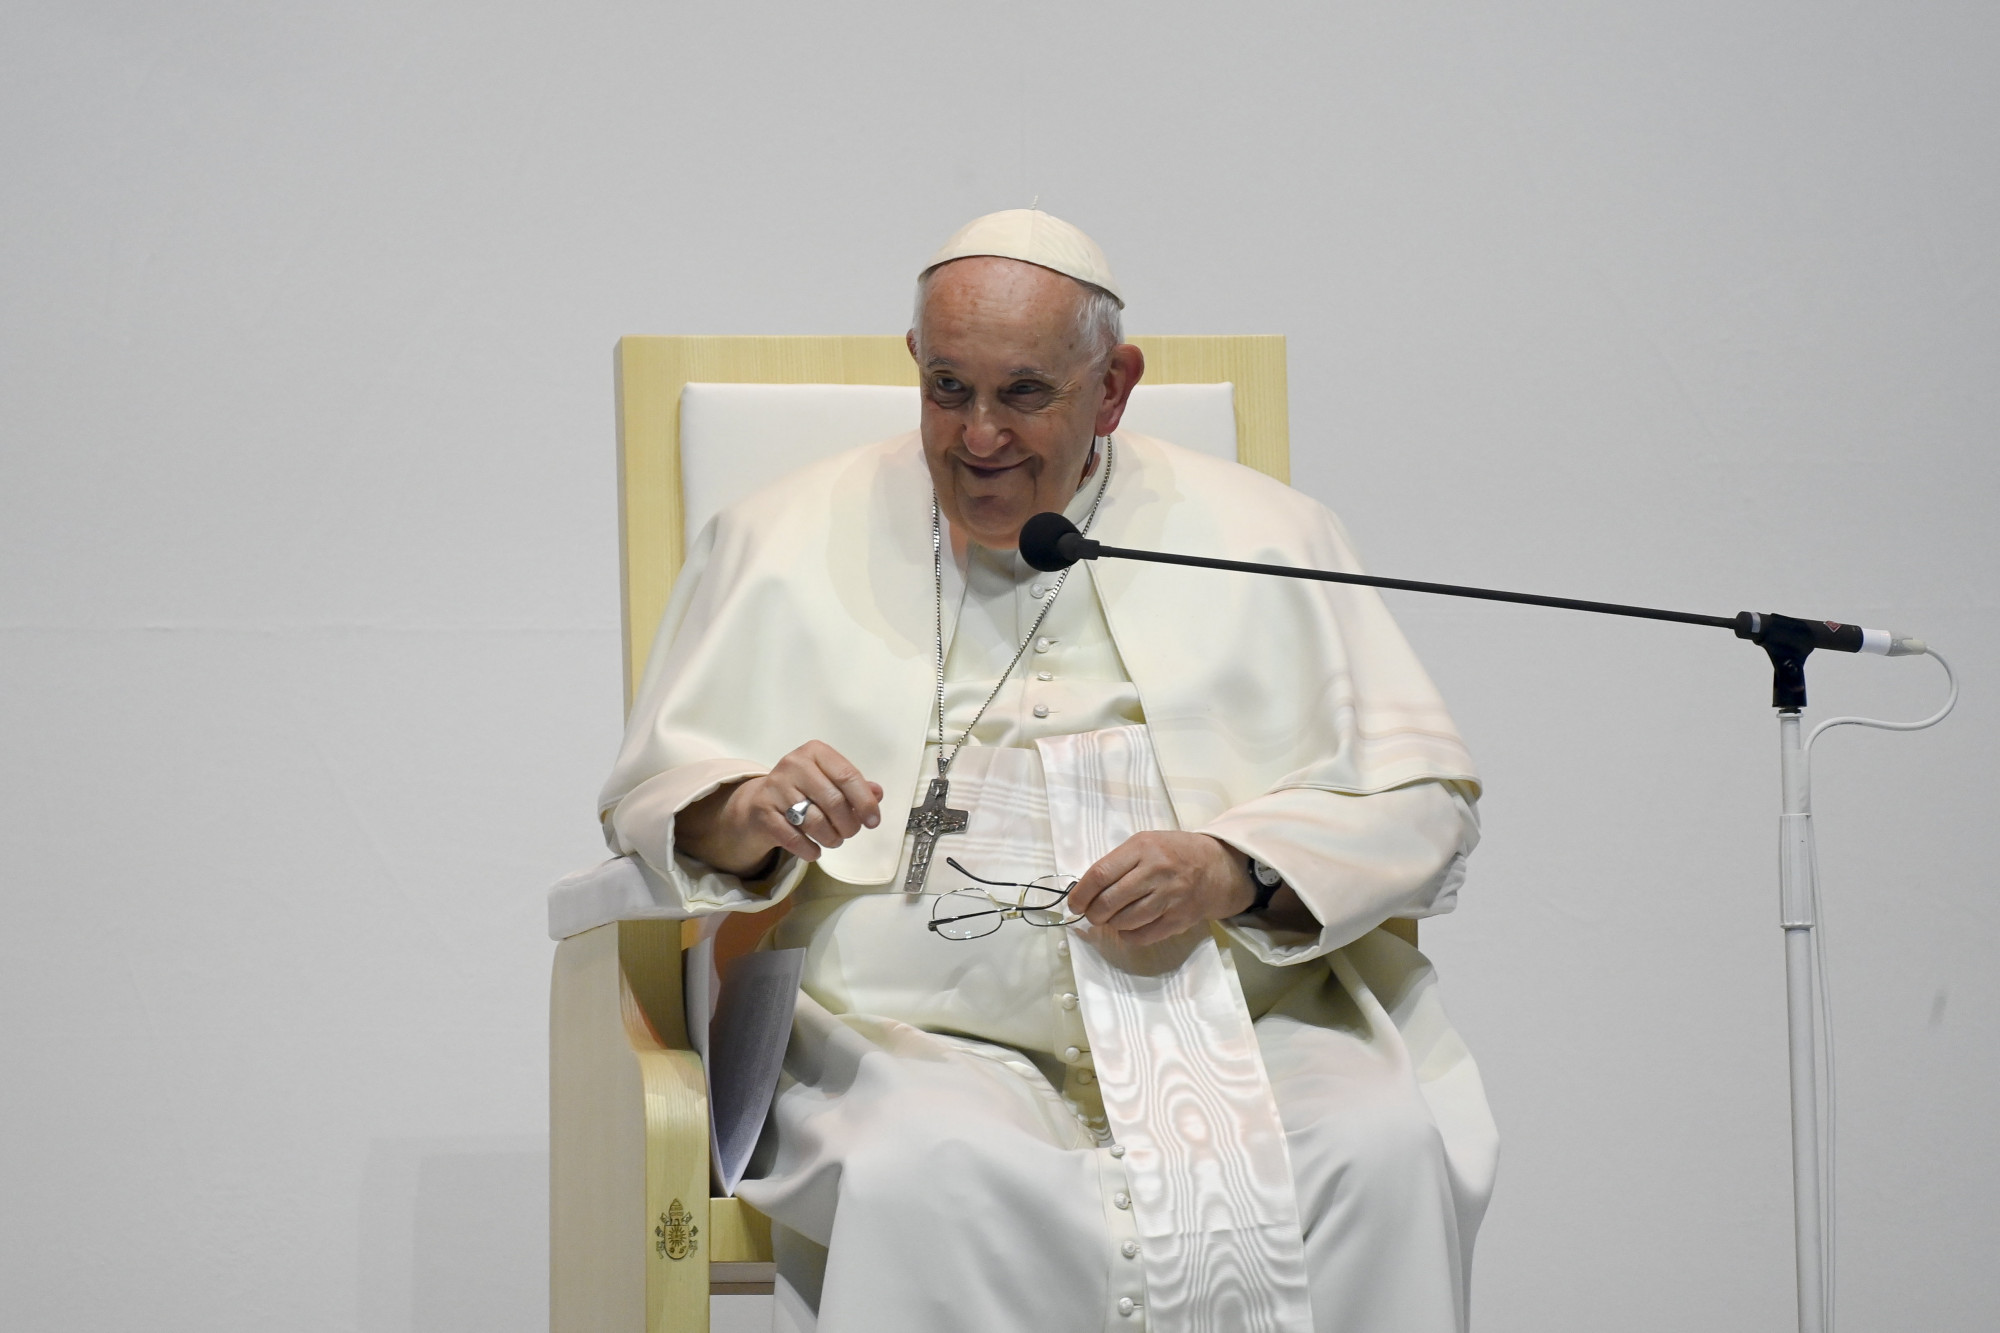 Az ukránok nem tudják, milyen titkos békemisszióról beszélt Ferenc pápa